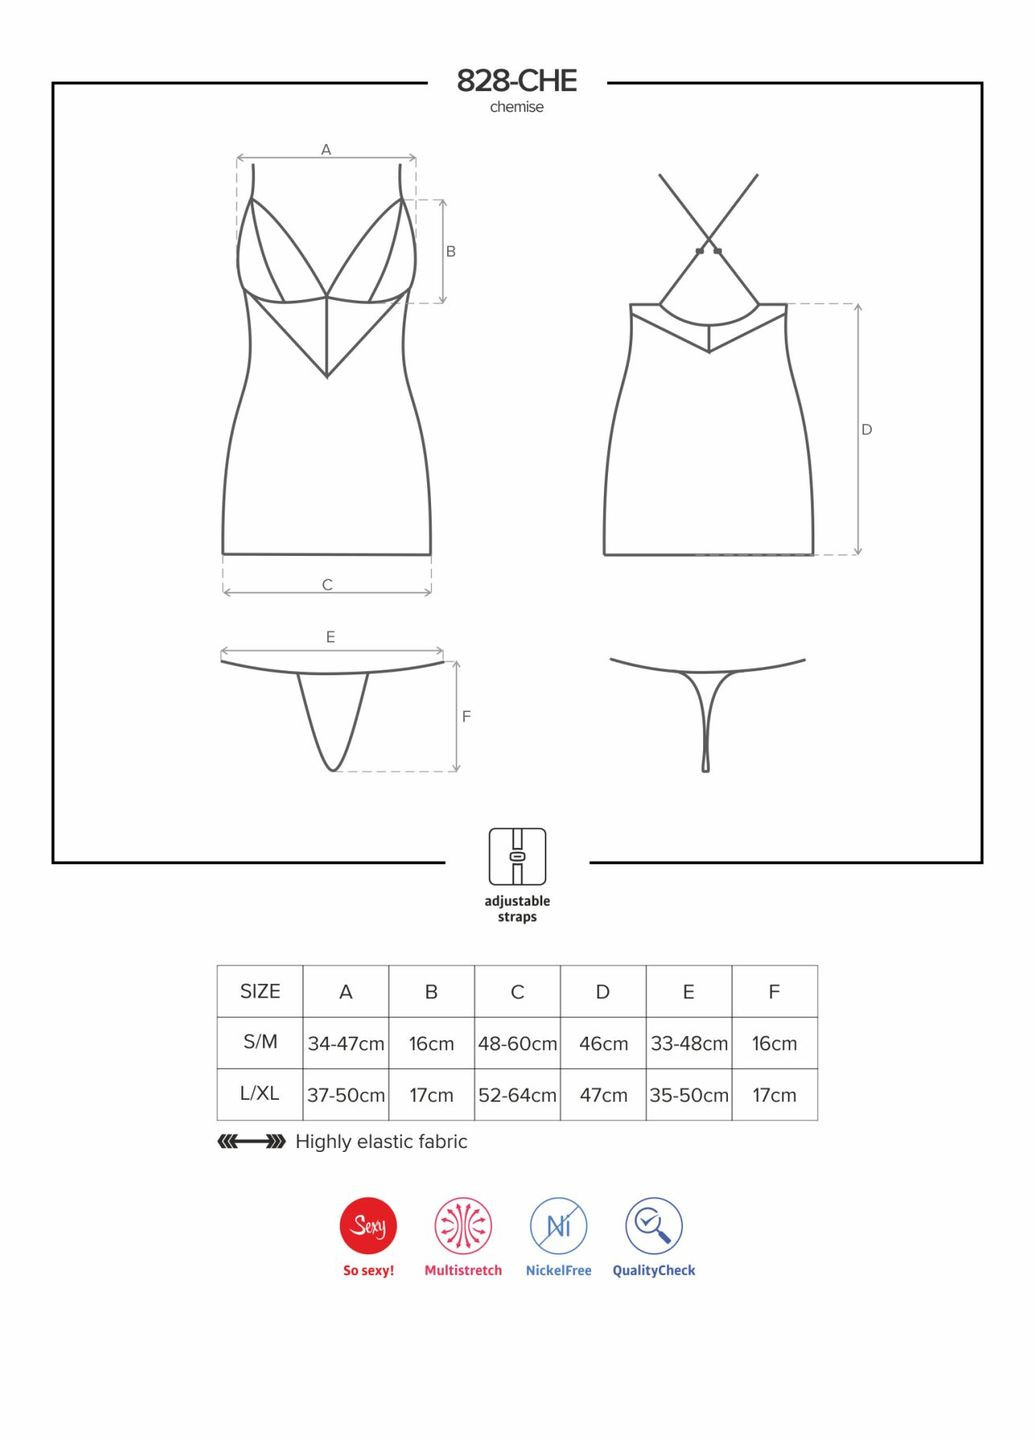 Сатиновий комплект для сну з мереживом 828-CHE-1 chemise & thong, чорний, сорочка, стр Obsessive (297587869)